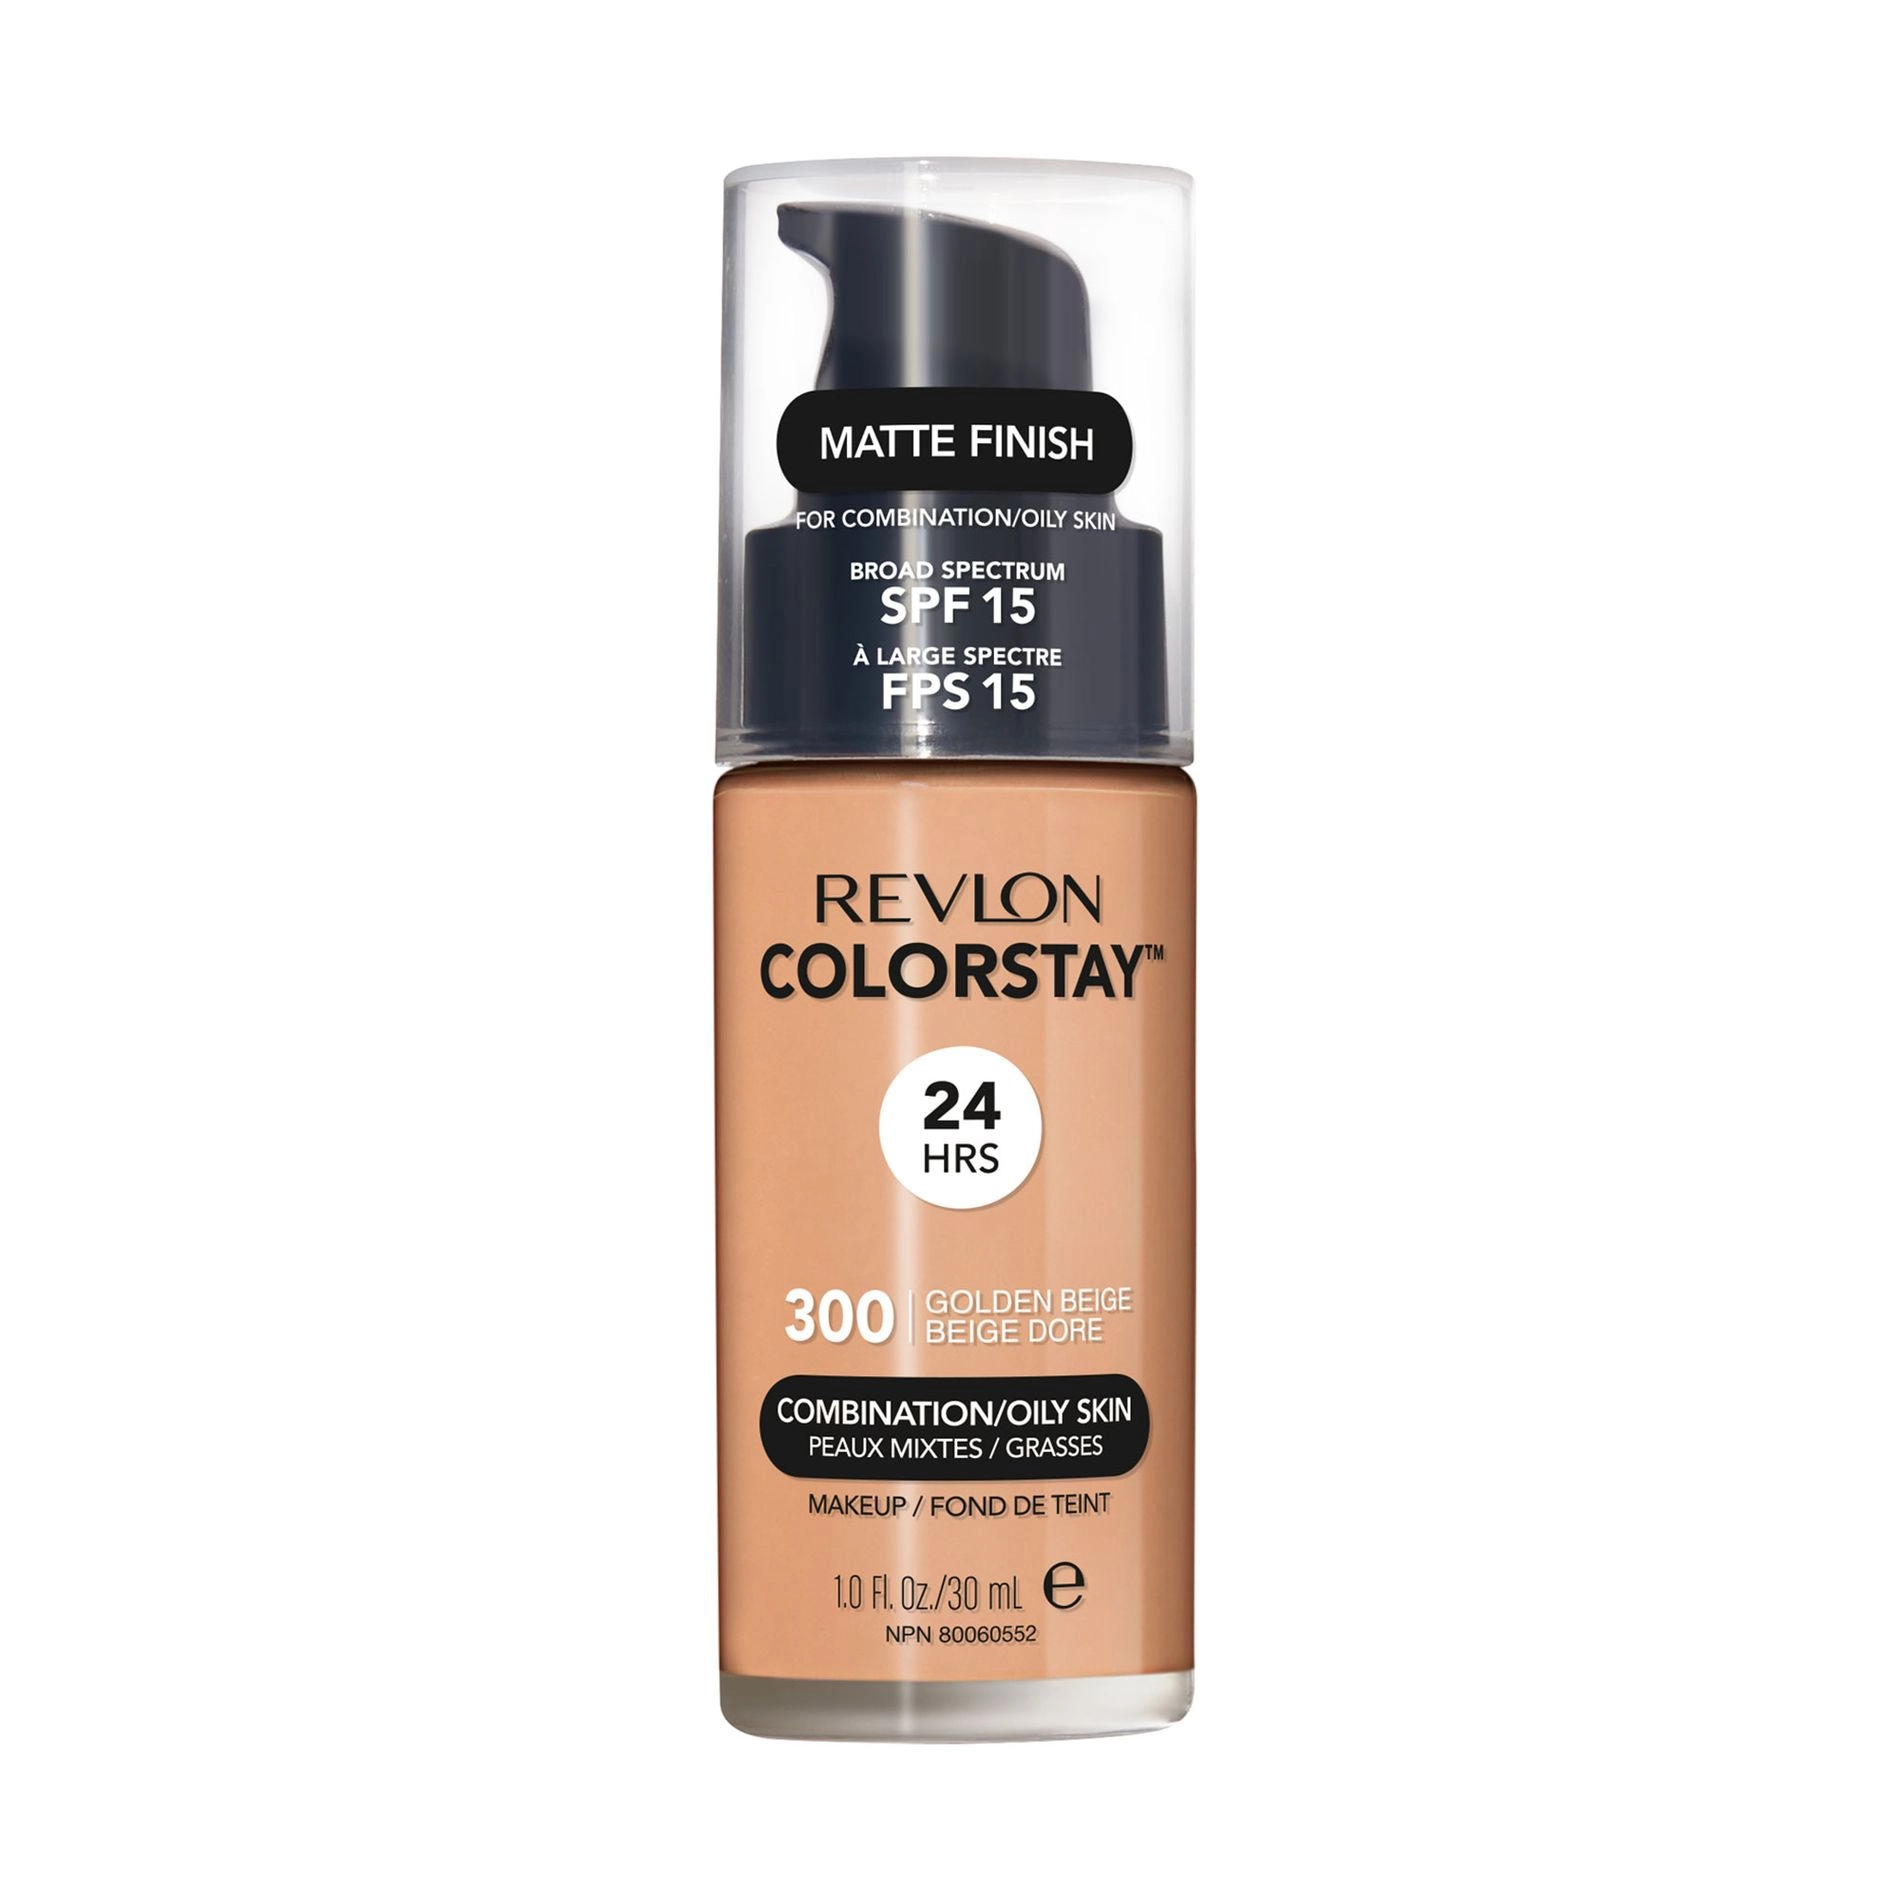 Revlon Тональный крем для лица ColorStay Makeup for Combination/Oily Skin SPF 15 для комбинированной и жирной кожи, 300 Golden Beige, 30 мл - фото N1